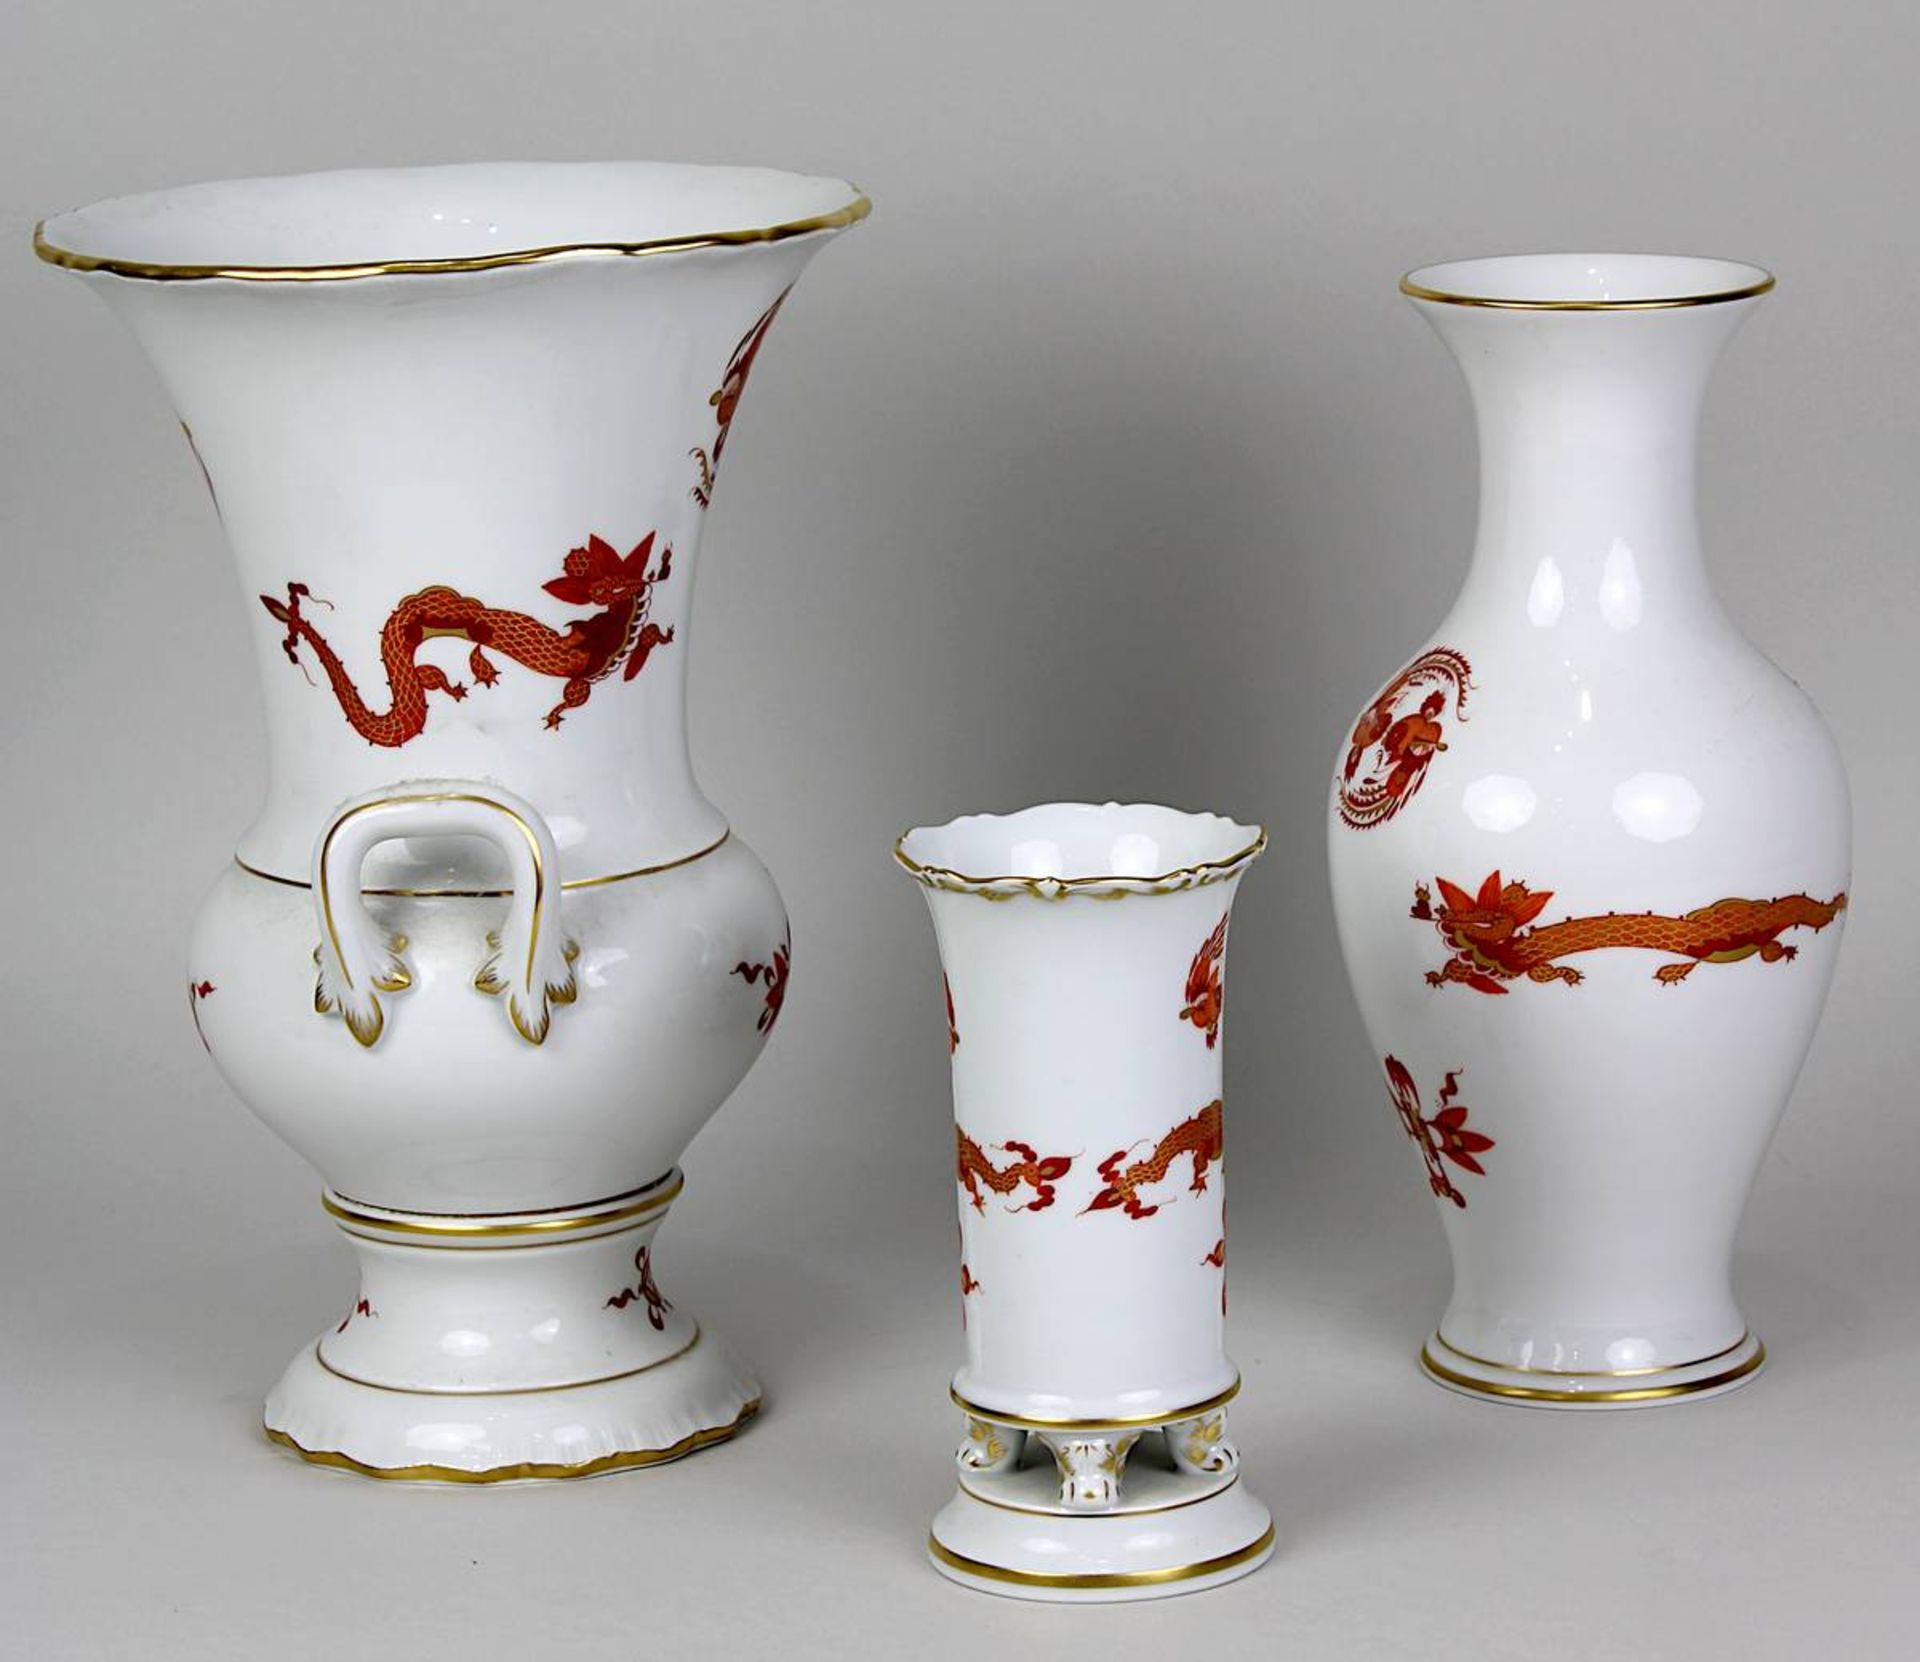 Drei Vasen, Meissen 2. H. 20. Jh., Dekor roter Drache mit Goldrändern, purpur u. gold staffiert: - Image 2 of 5